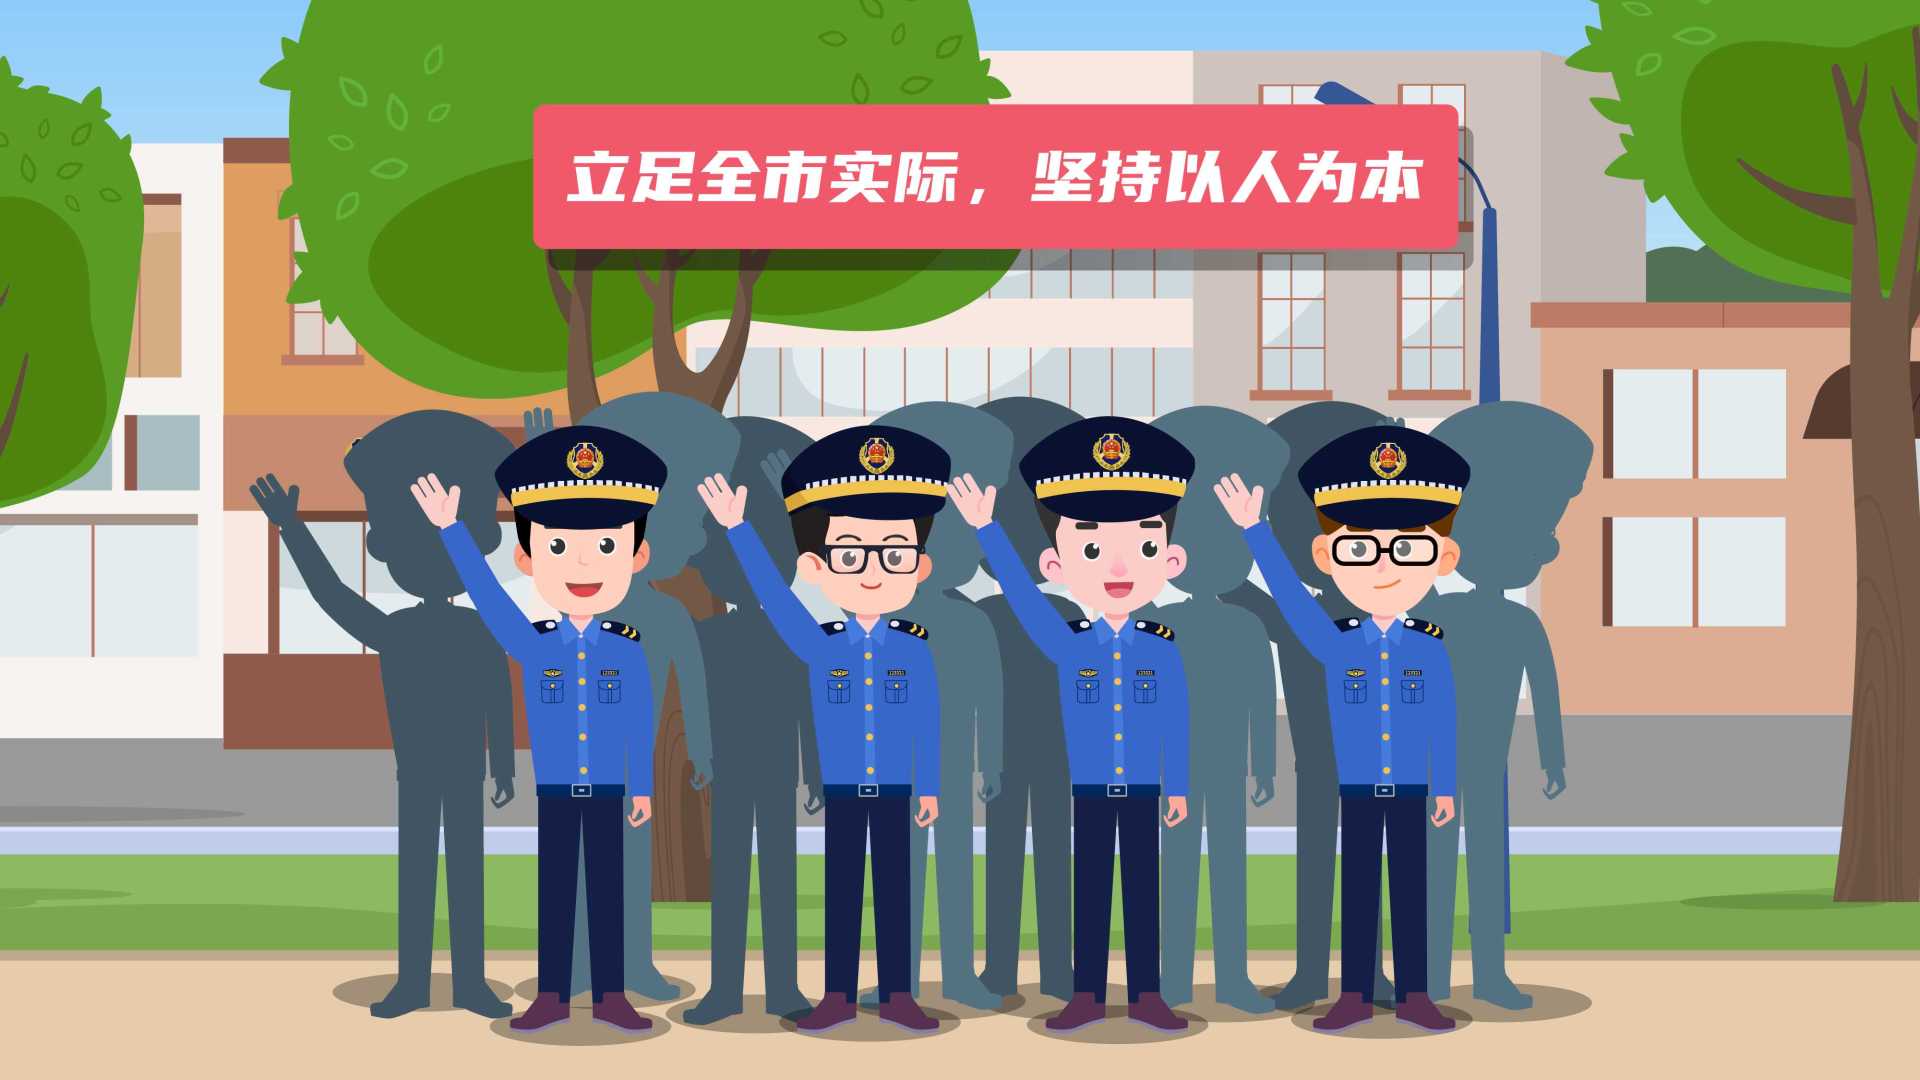 MG动画：《上海市市容环境卫生管理条例》宣传科普动画